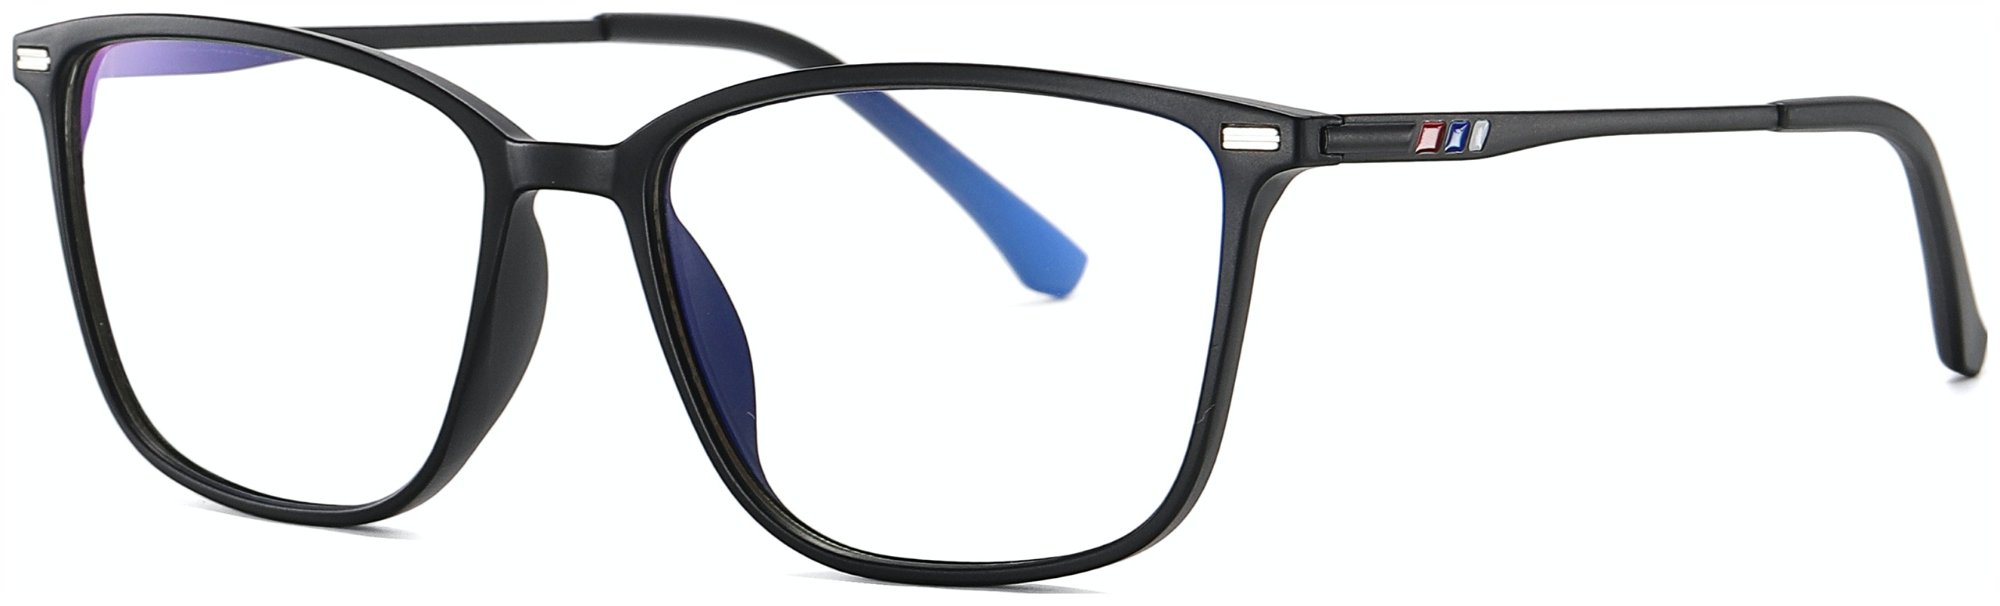 Regulær bluelight briller, Ground by Kaleu (H: 5,5 cm. x B: 1,7 cm. x L: 14,5 cm., Matsort)